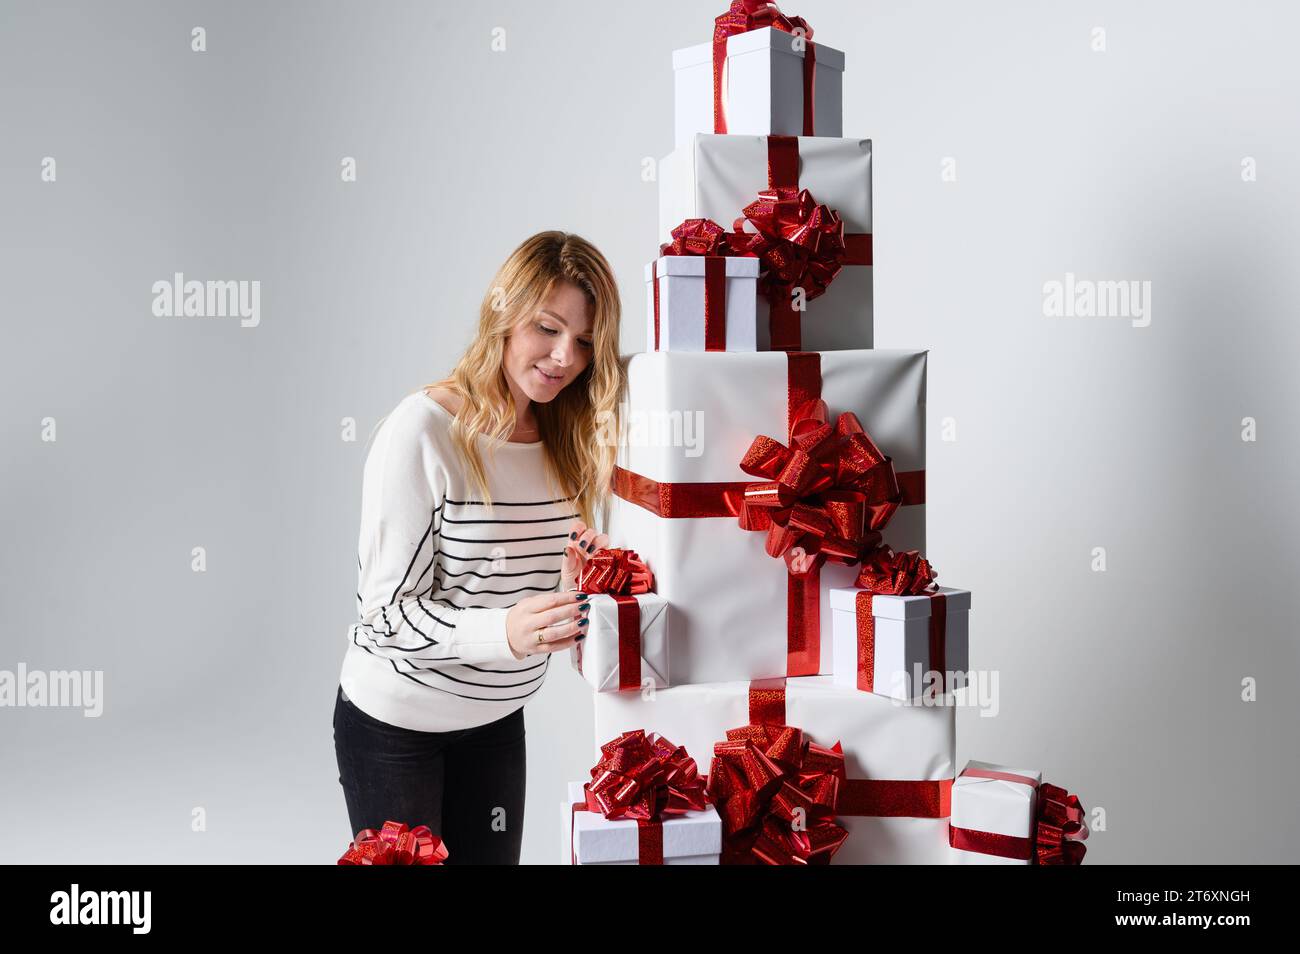 Una bellissima e bellissima giovane donna si pone in mezzo a una montagna di scatole regalo bianche su sfondo grigio. Decorato splendidamente per Natale. Moda natalizia Foto Stock